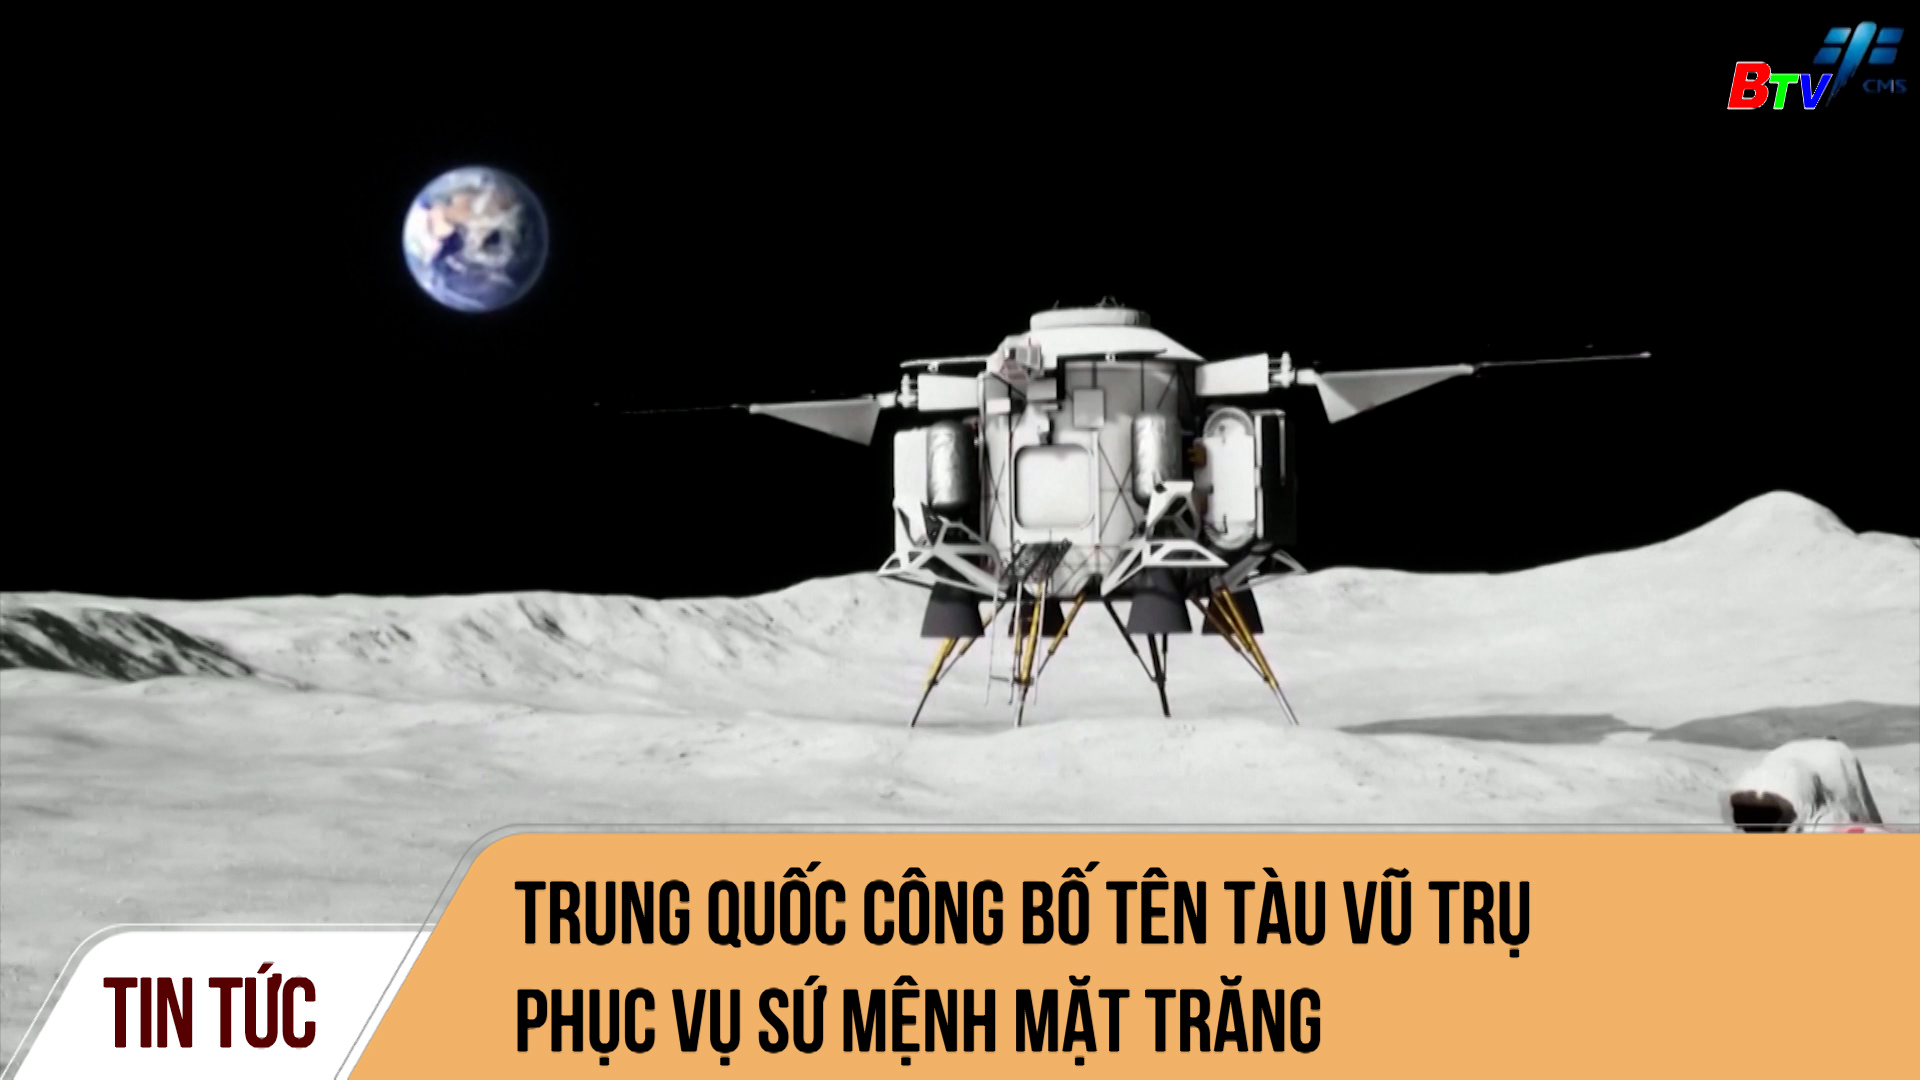 Trung Quốc công bố tên tàu vũ trụ phục vụ sứ mệnh mặt trăng 